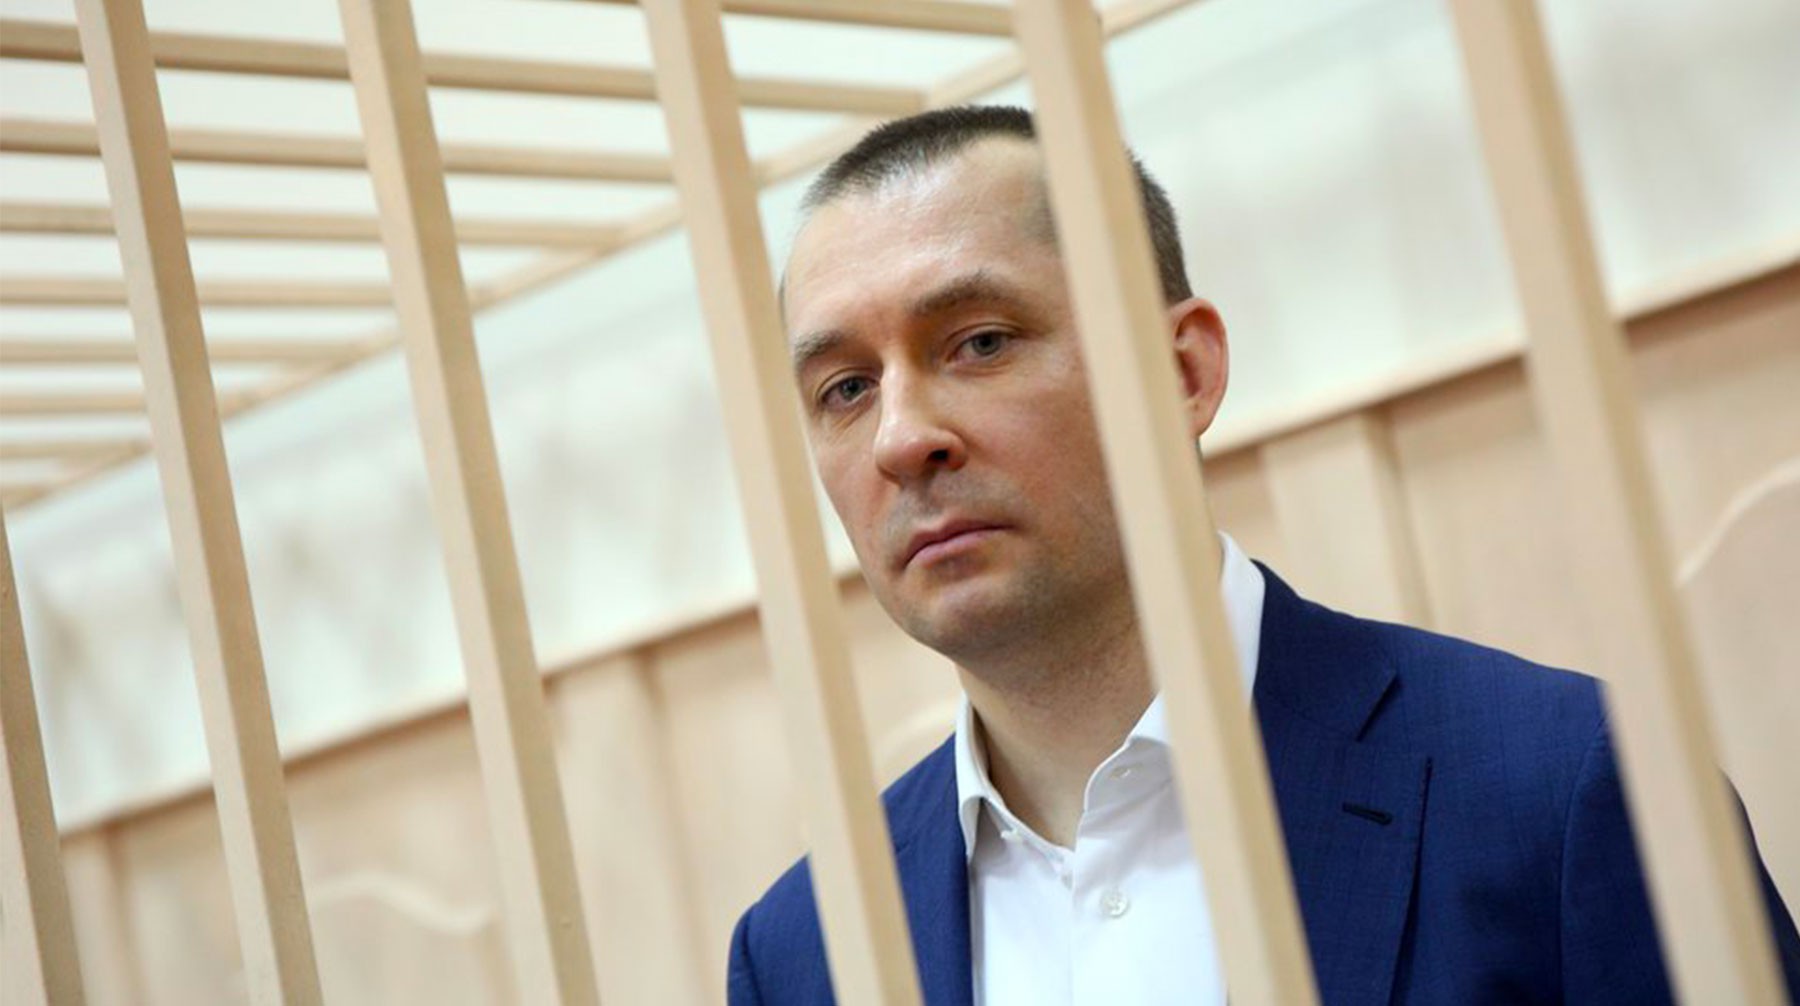 Dailystorm - Полковник Захарченко усомнился в наличии совести у прокурора, запросившего штраф в полмиллиарда